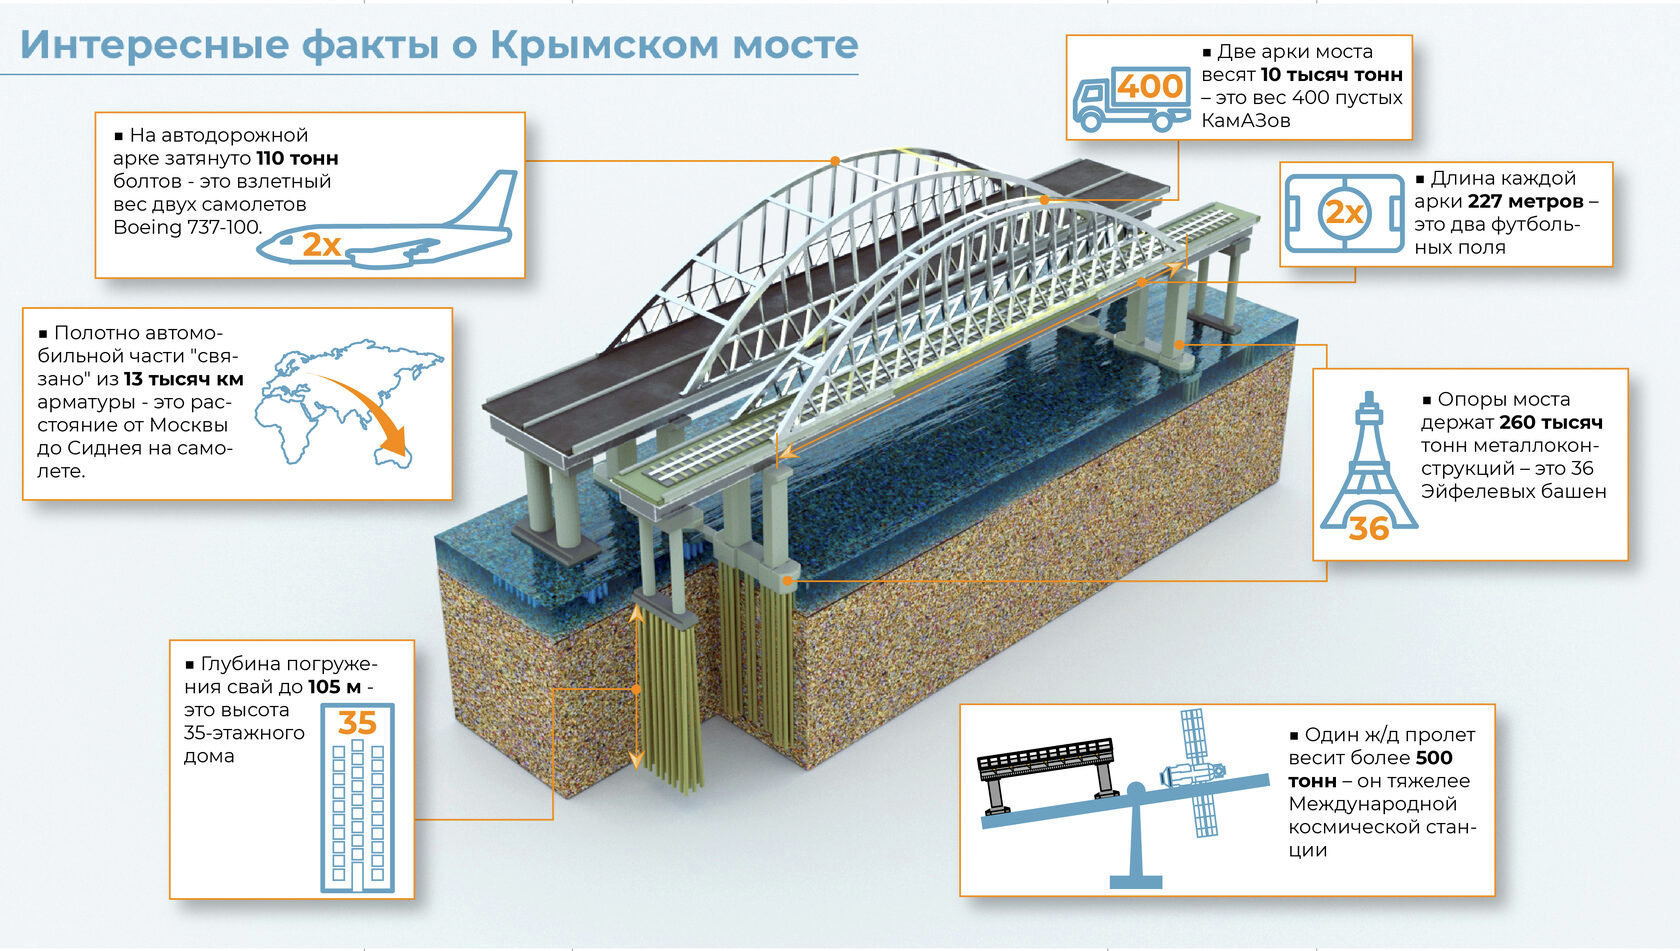 Интересные факты о Крымском мосте